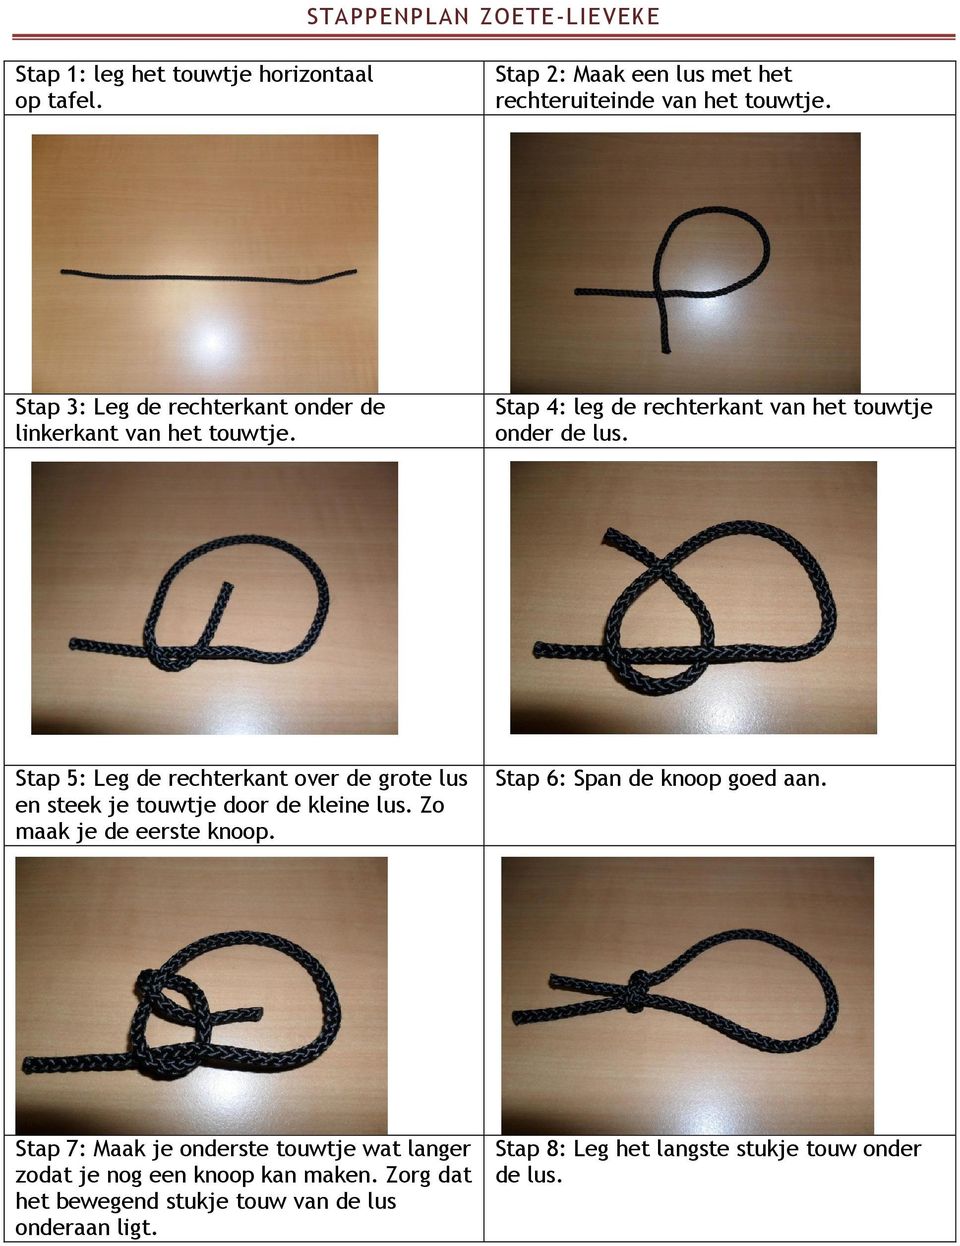 Stap 5: Leg de rechterkant over de grote lus en steek je touwtje door de kleine lus. Zo maak je de eerste knoop. Stap 6: Span de knoop goed aan.